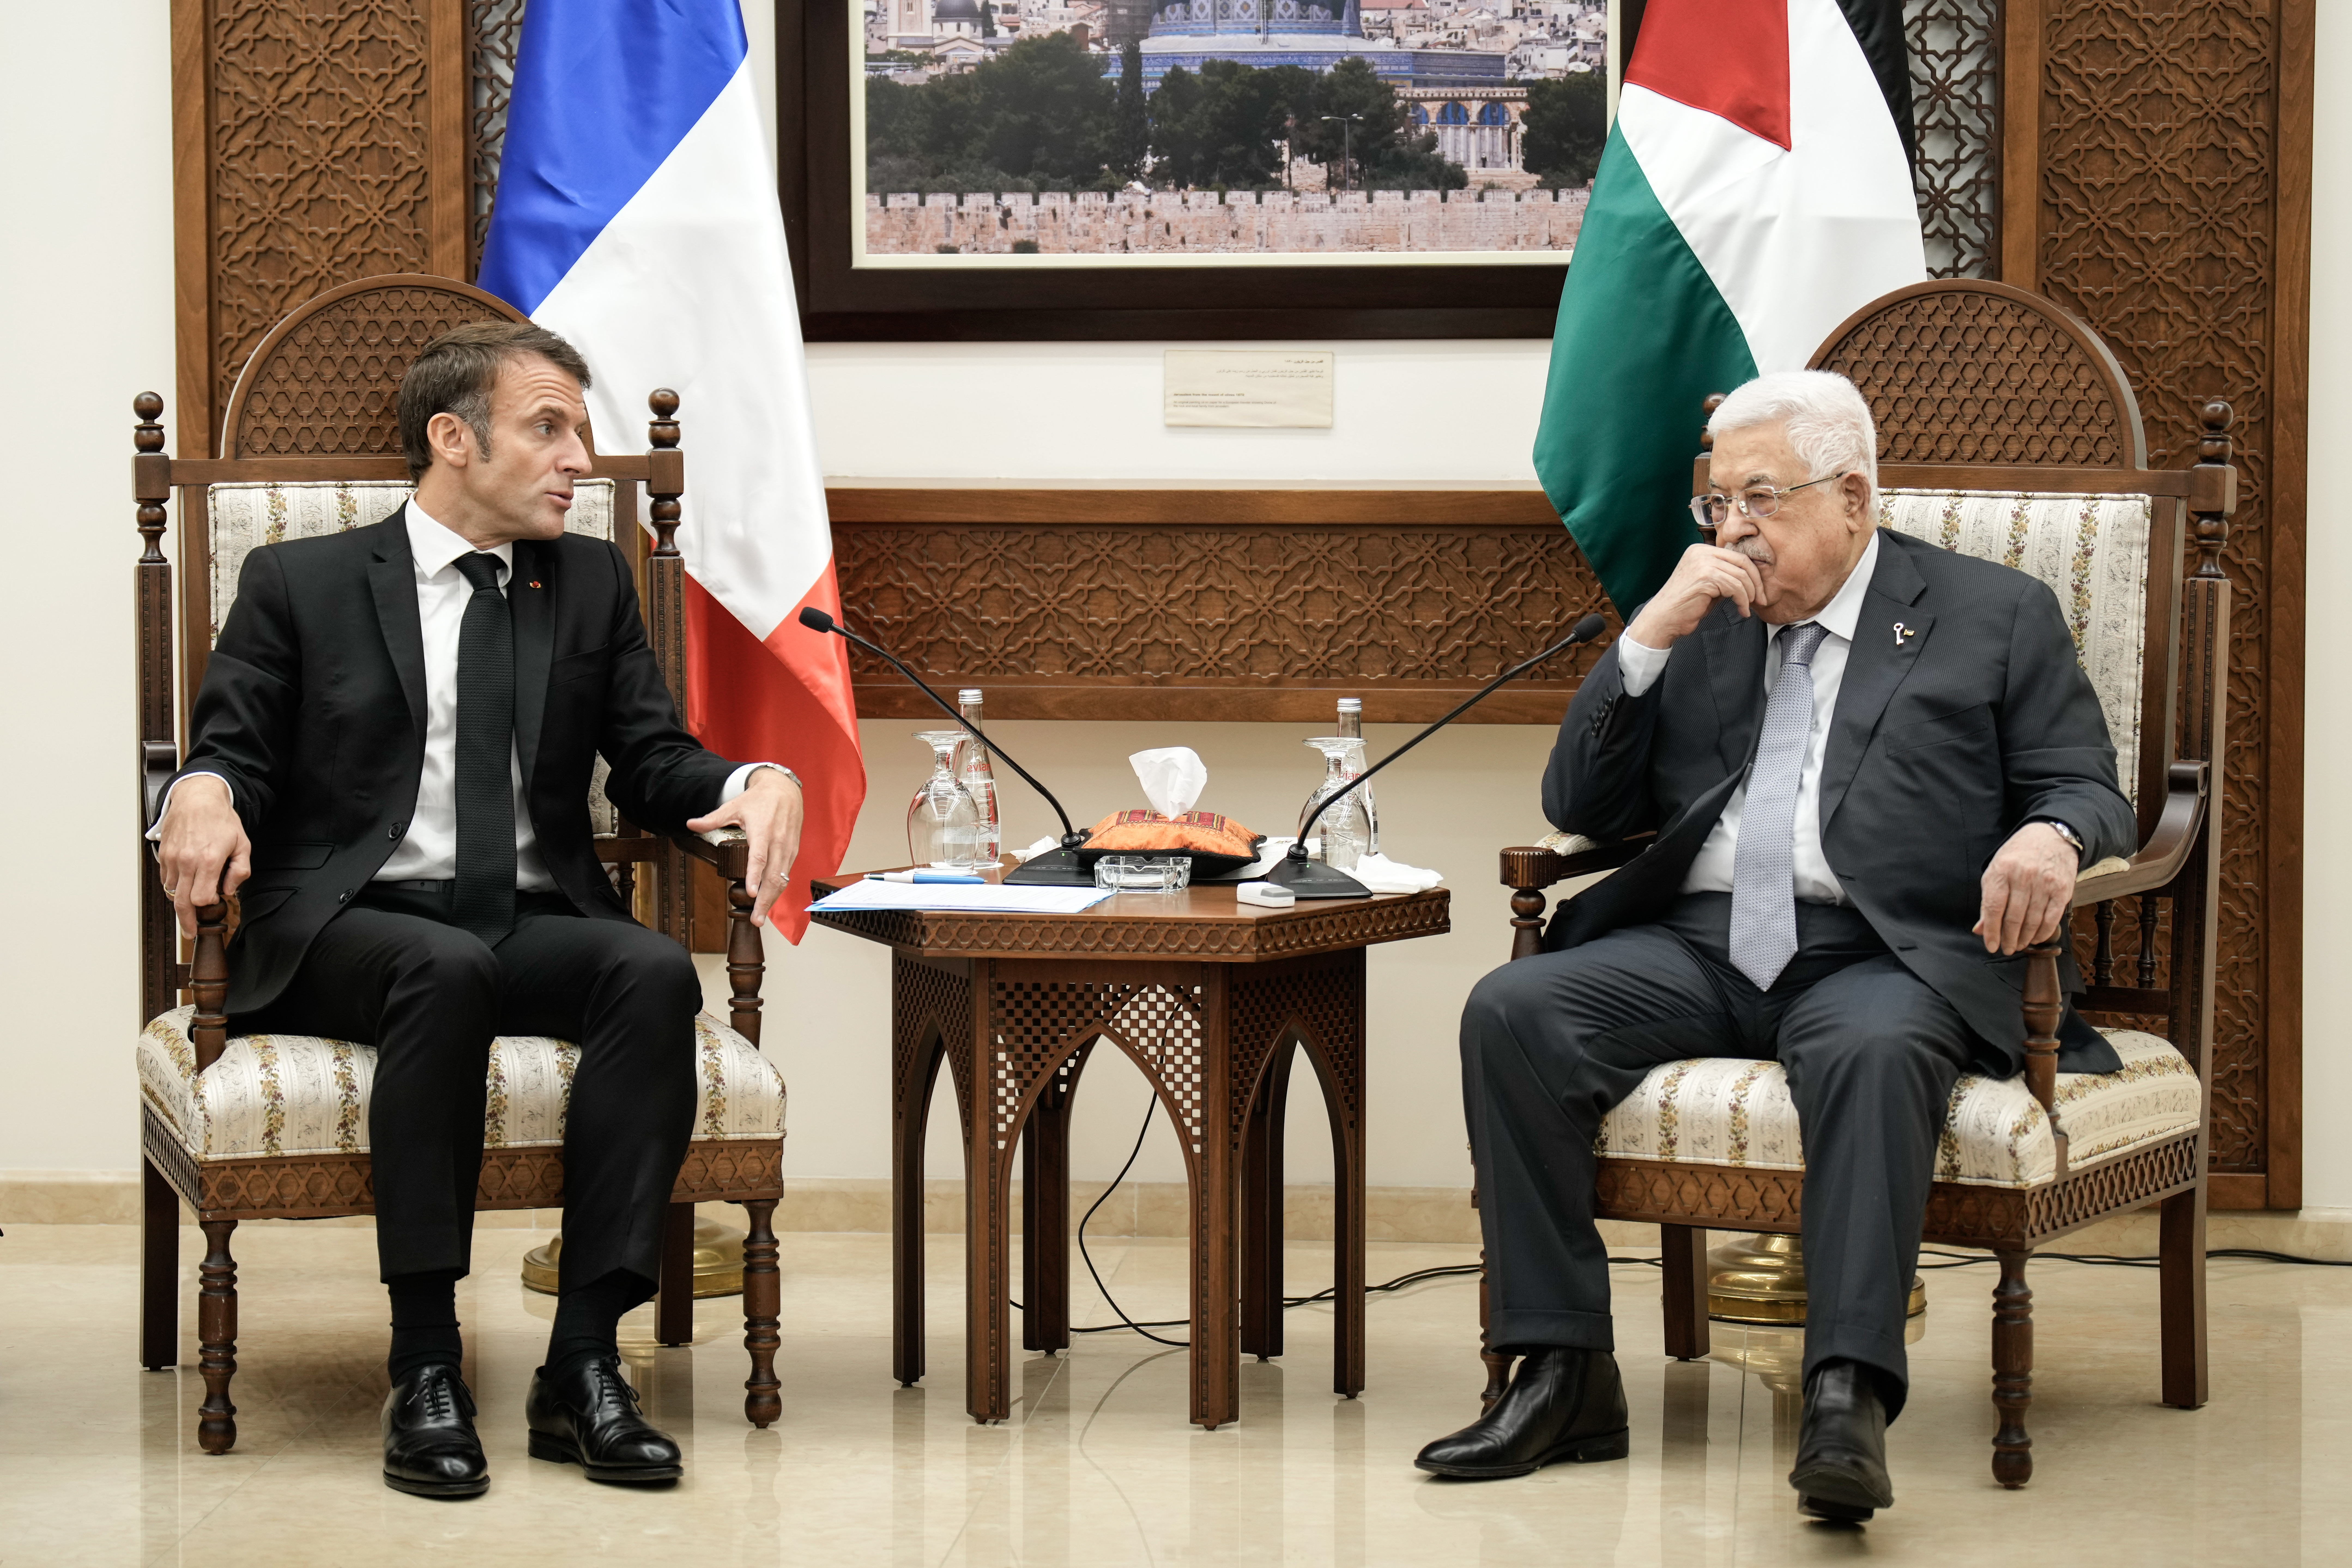 "Hamas ne predstavlja palestinski narod" Makron se sastao sa predsjednikom Mahmudom Abasom